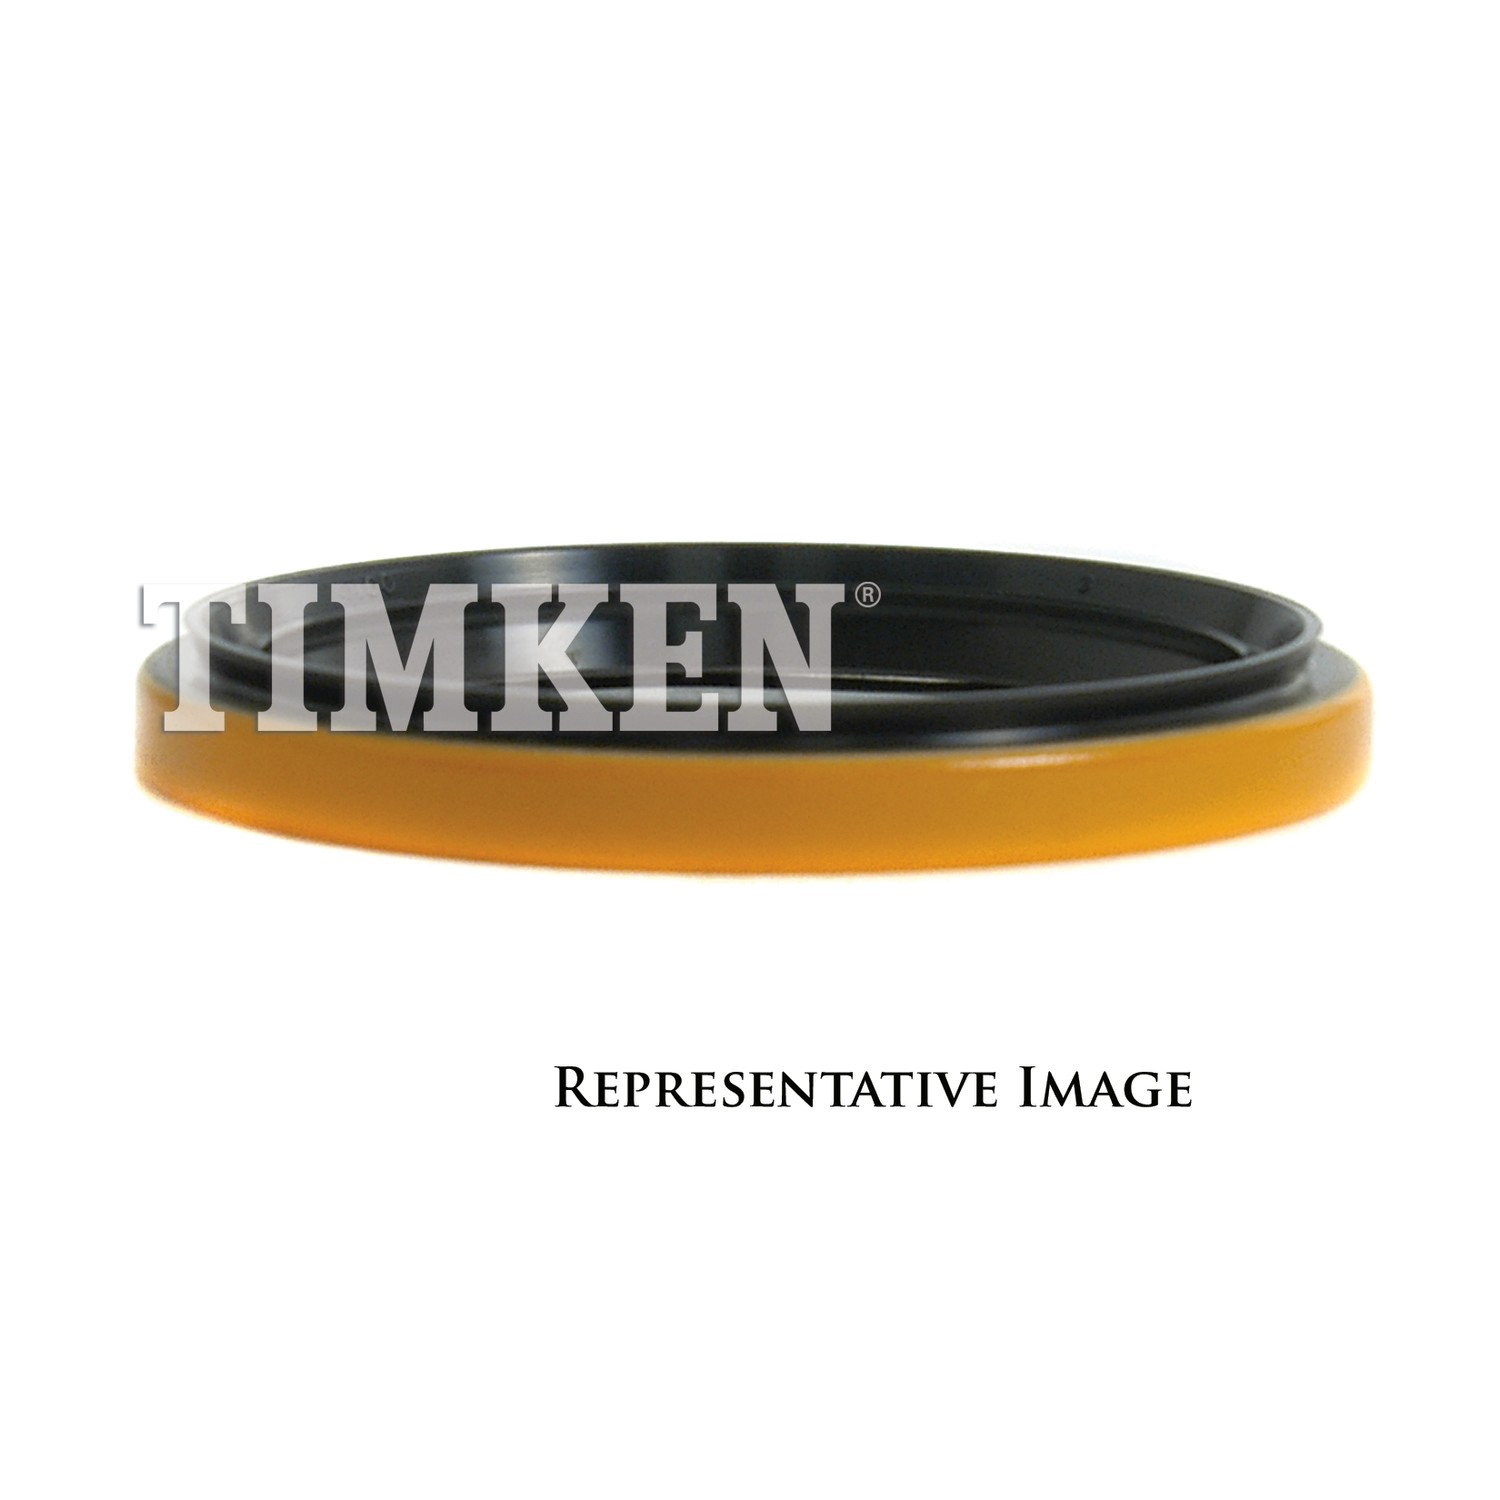 TIMKEN - Wheel Seal - TIM 4990